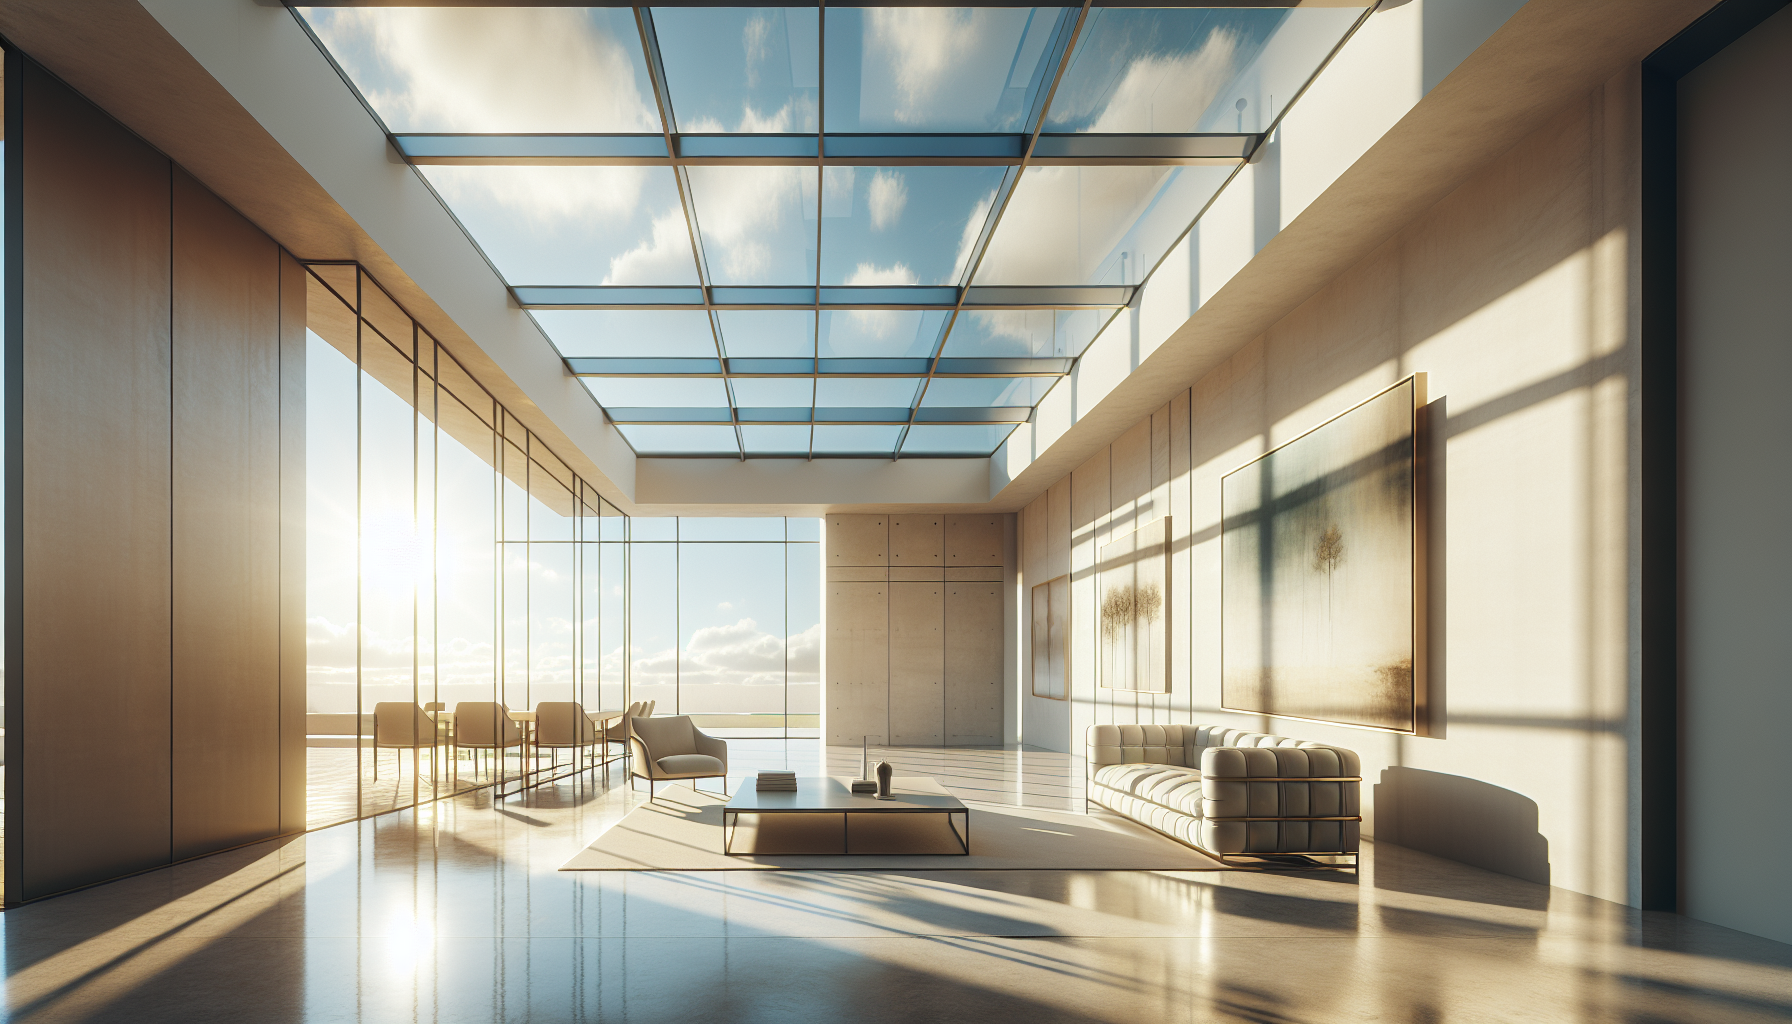 Ästhetisches Design von Panorama Dachfenstern für modernes Wohnen